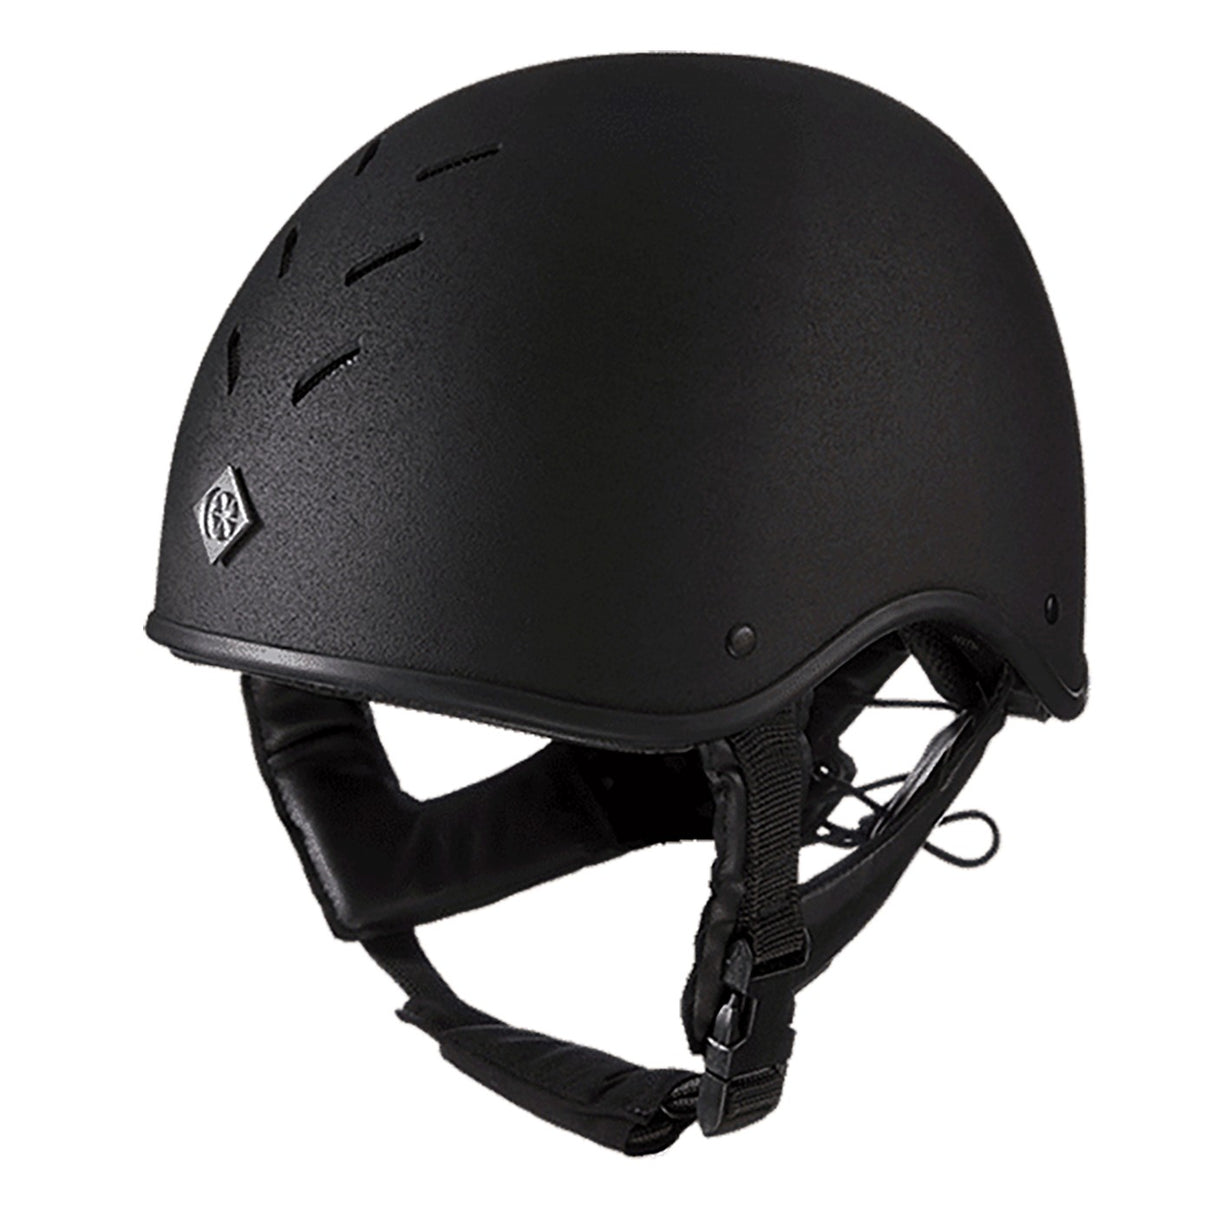 Charles Owen MS1 Pro Helmet